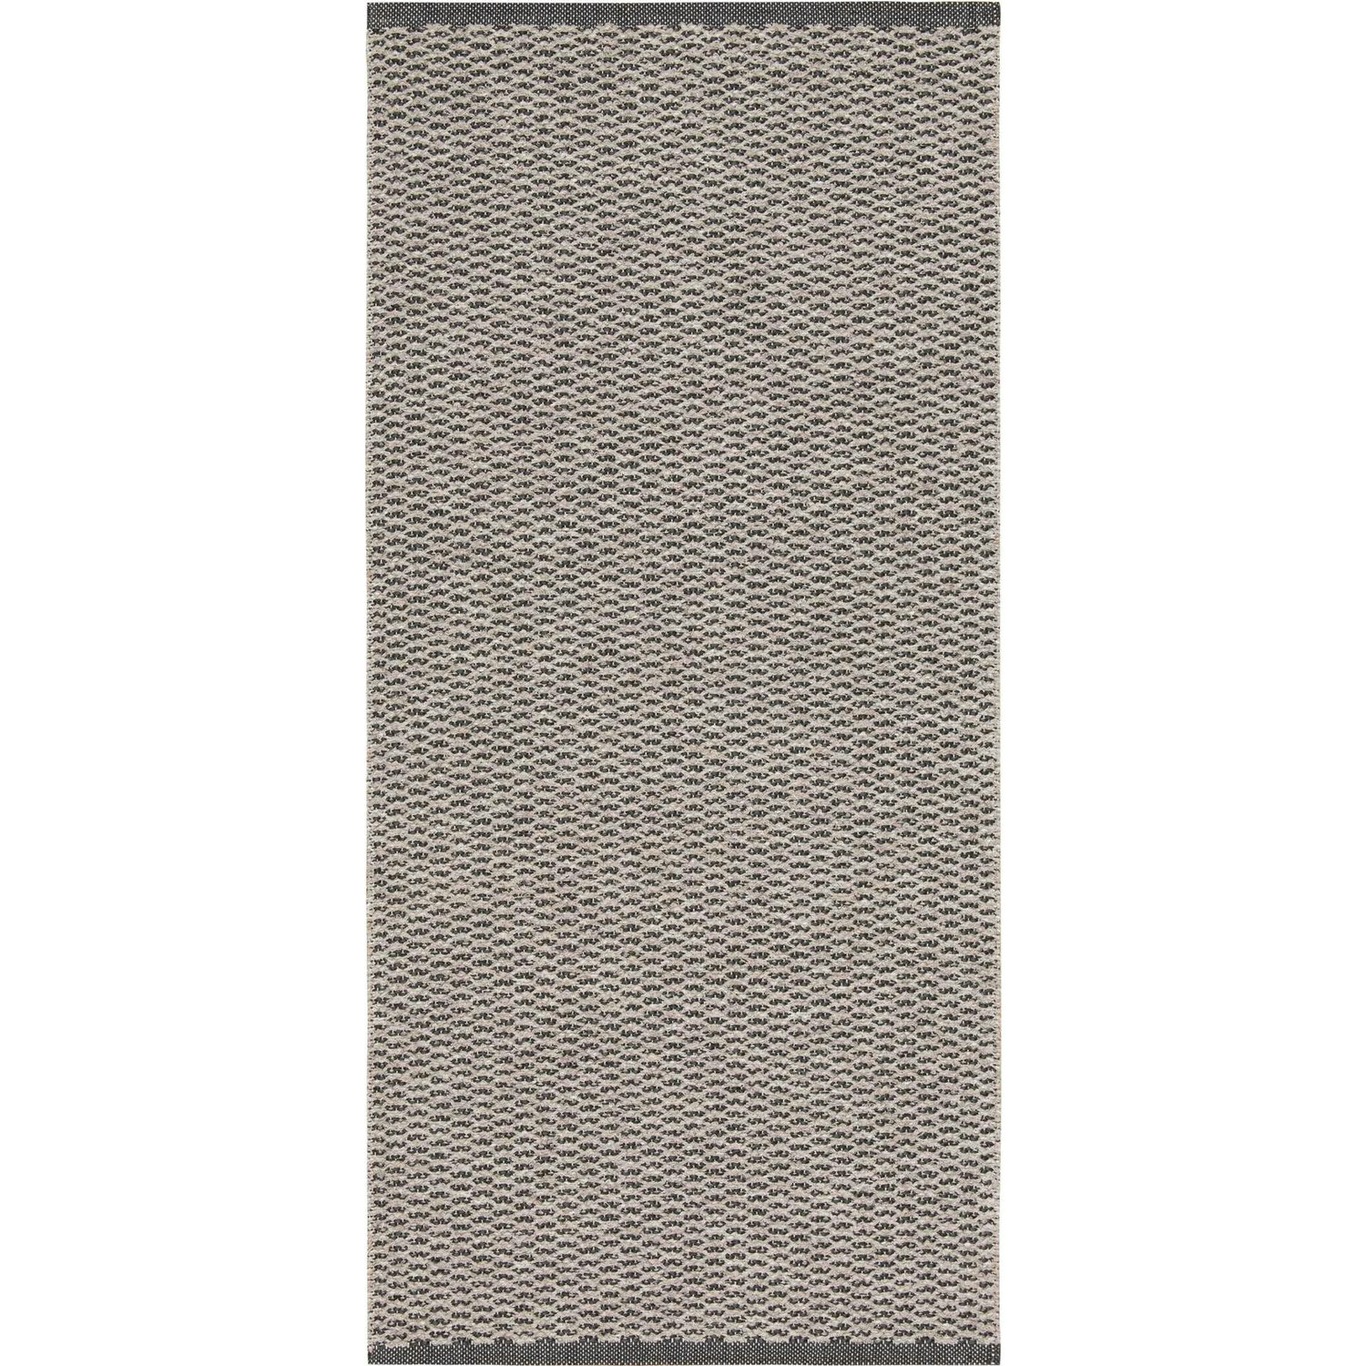 Mixed Signe Teppich 200x300 cm, Grau